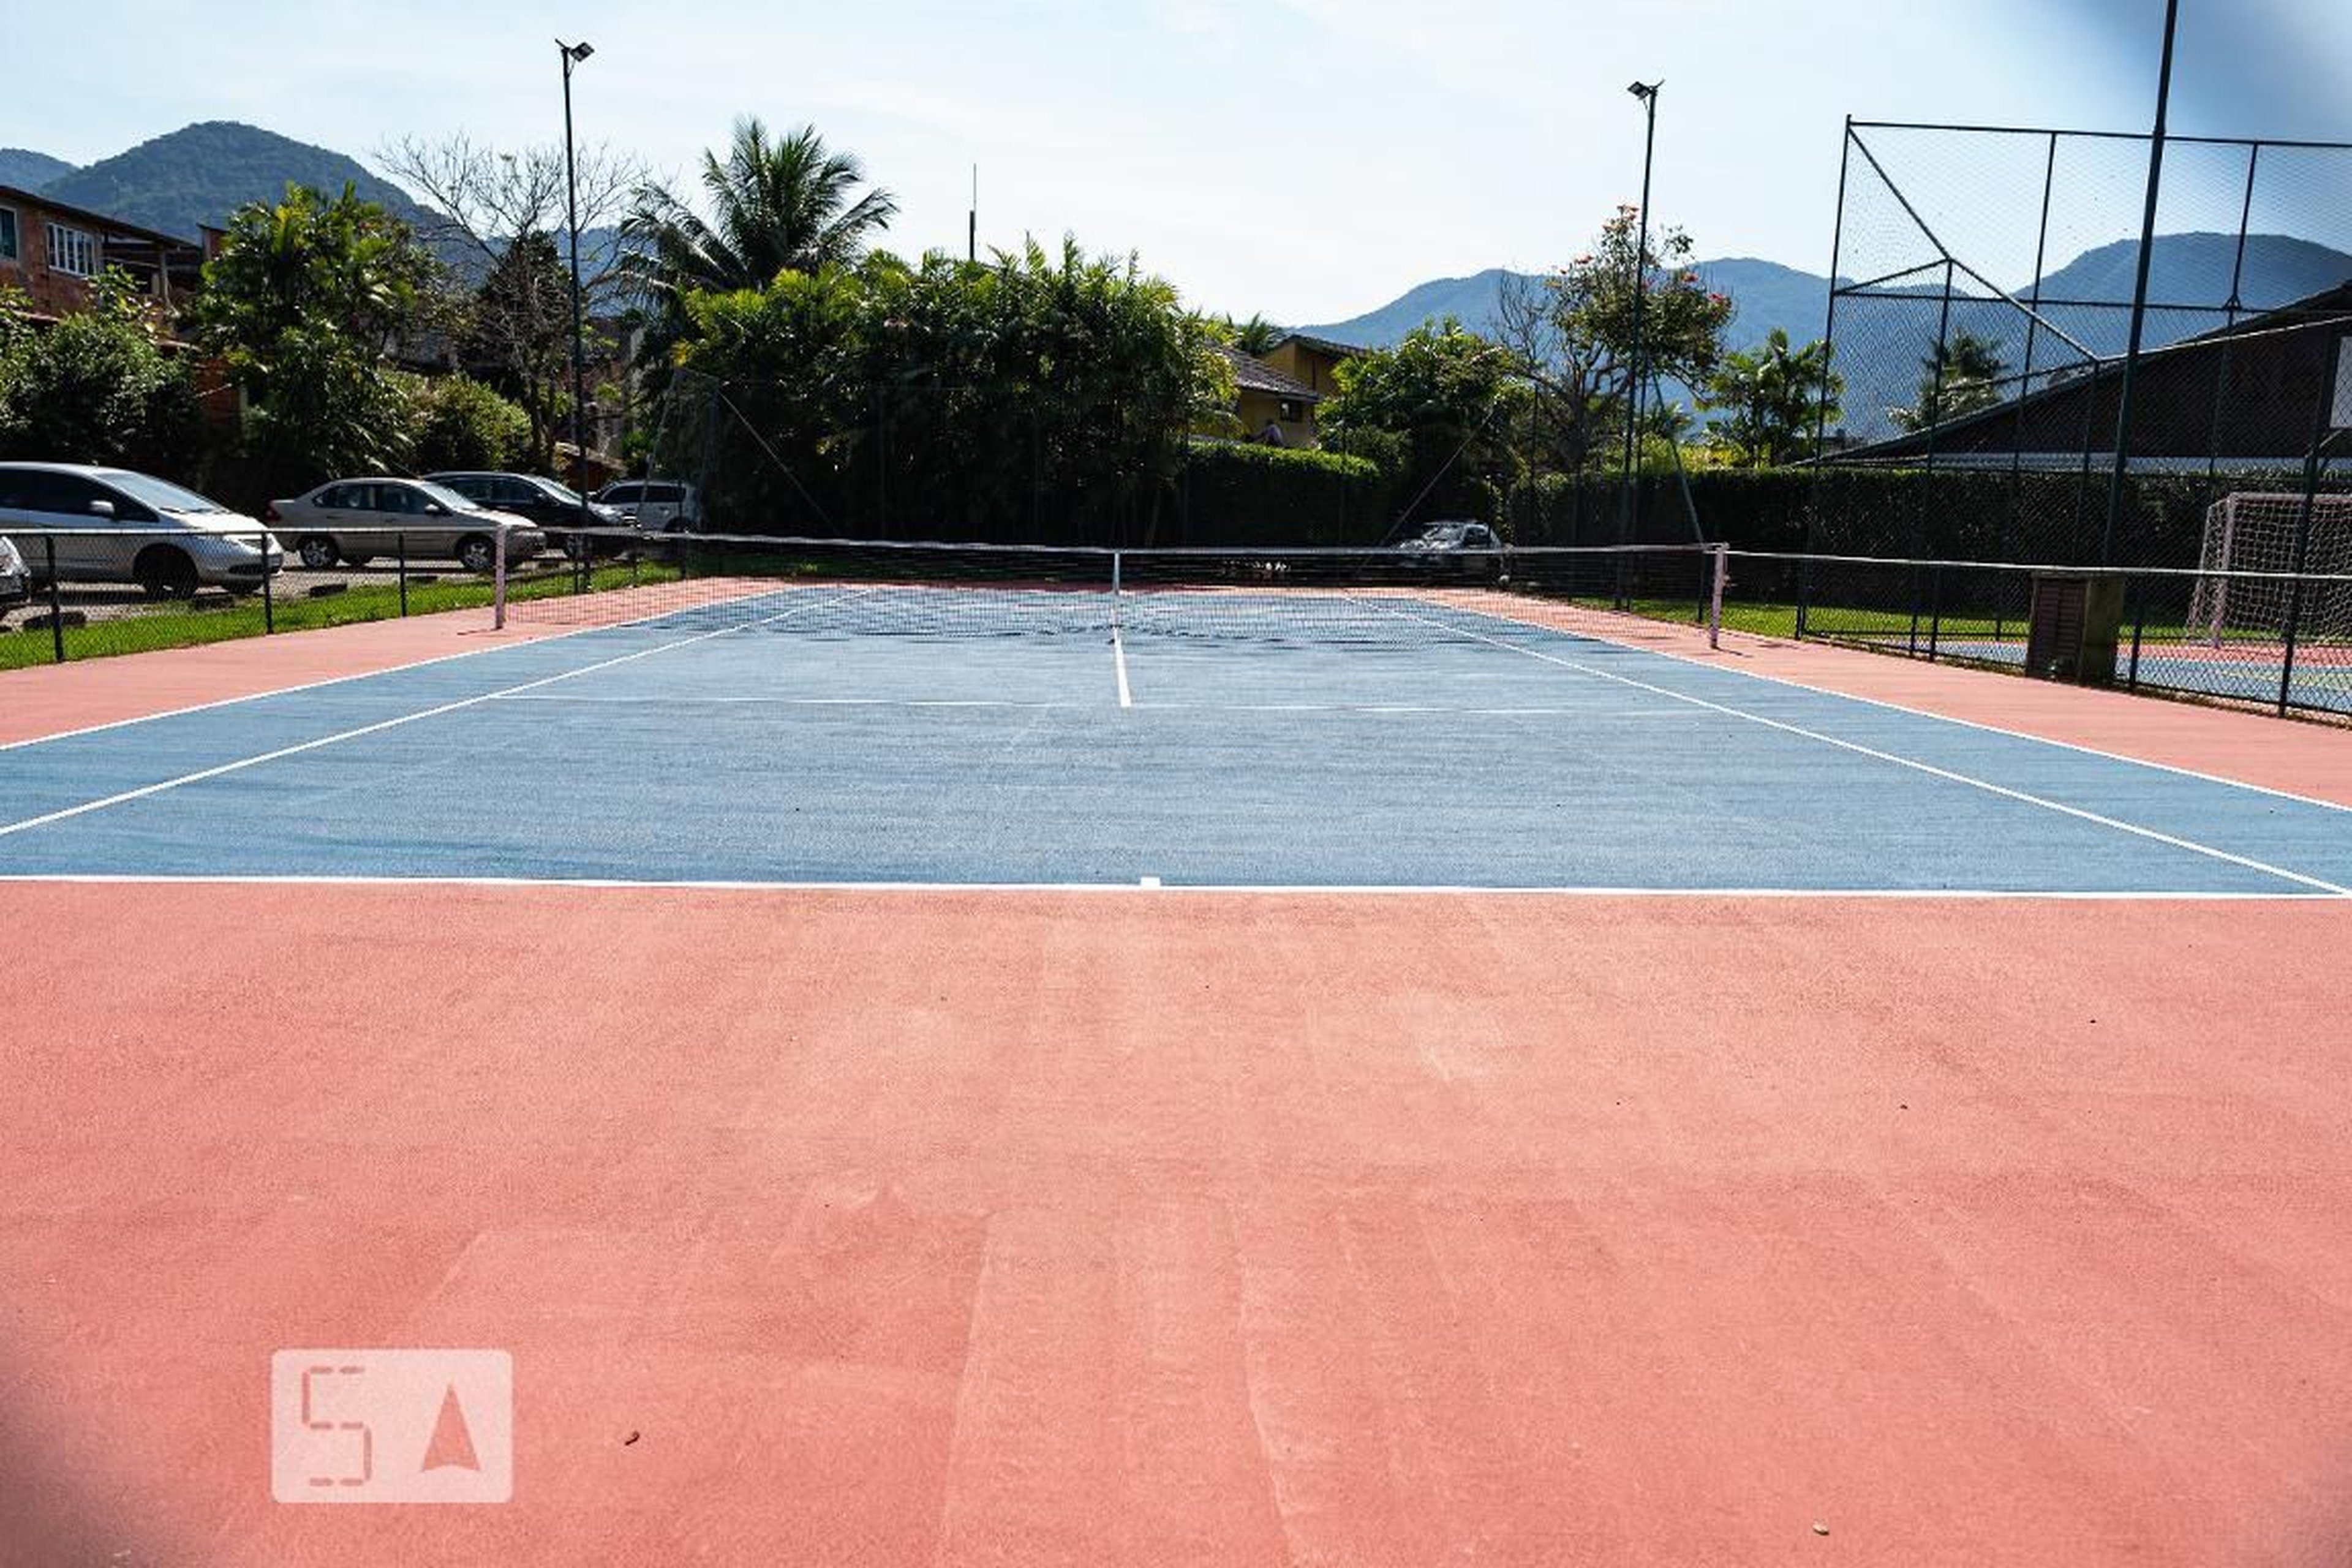 Área comum - quadra de tênis - Cezar